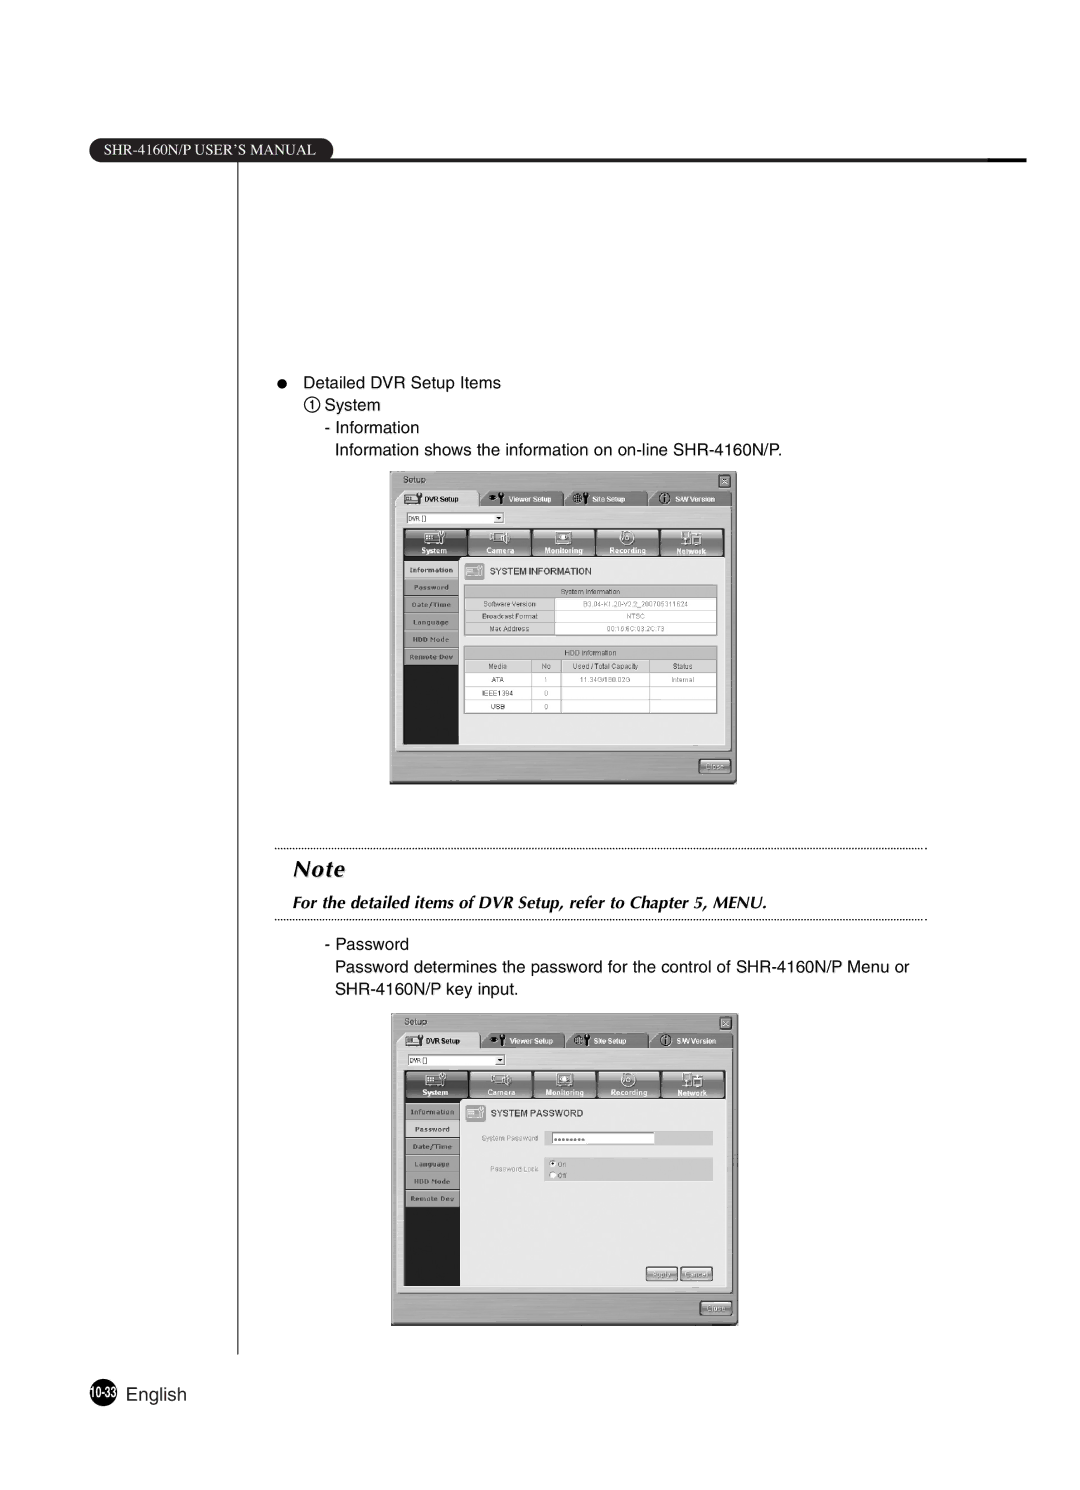 Samsung SHR-4160P manual 10-33English, For the detailed items of DVR Setup, refer to , Menu 